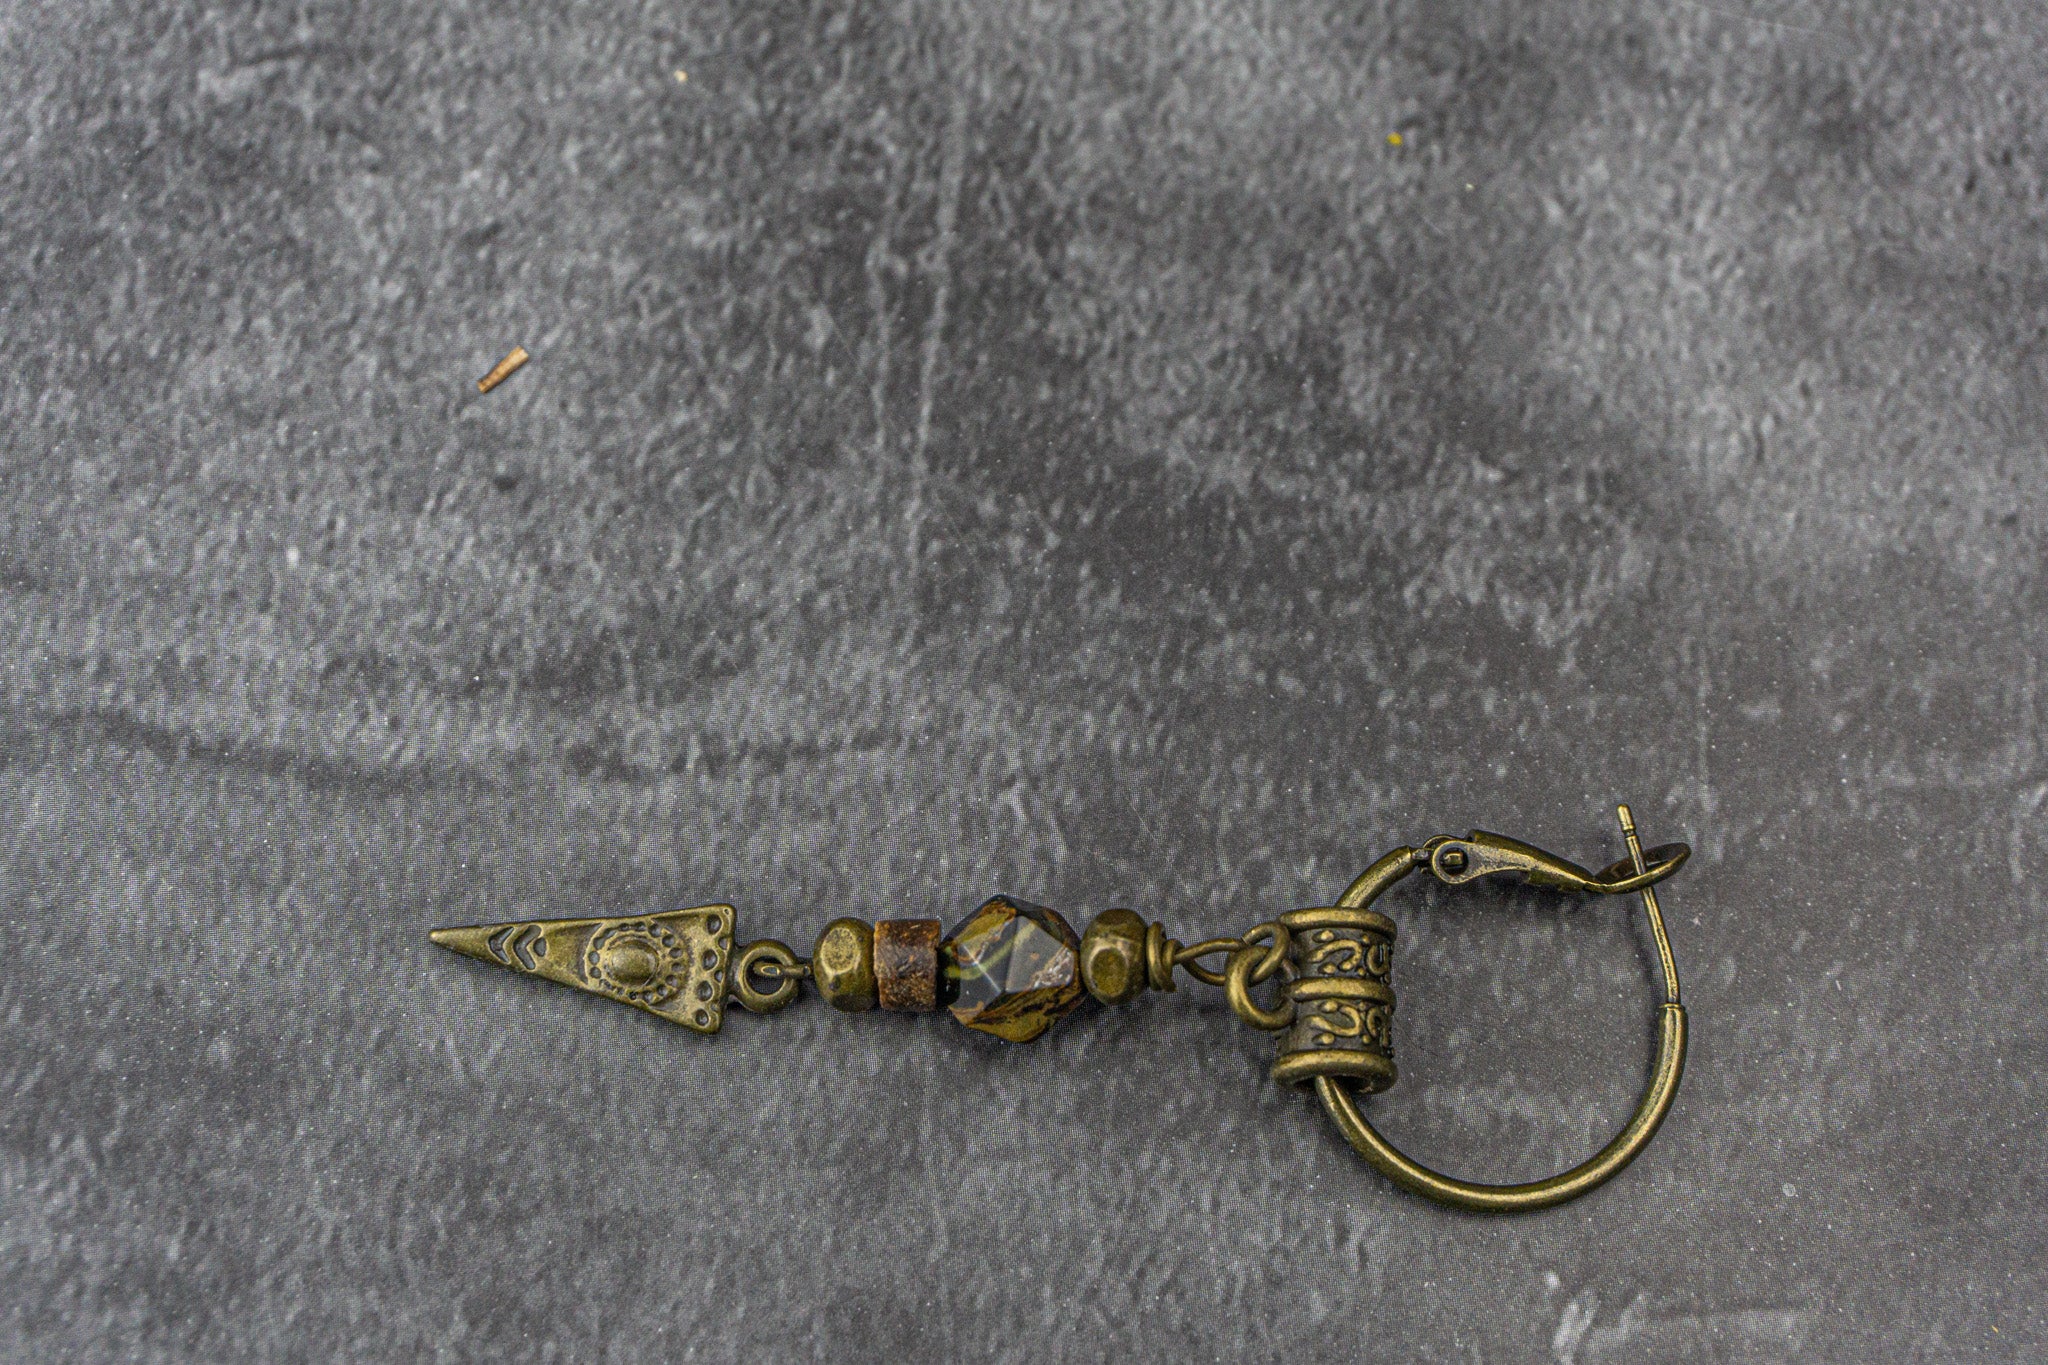 hoop broze earring with beaded dangle triangle pendant